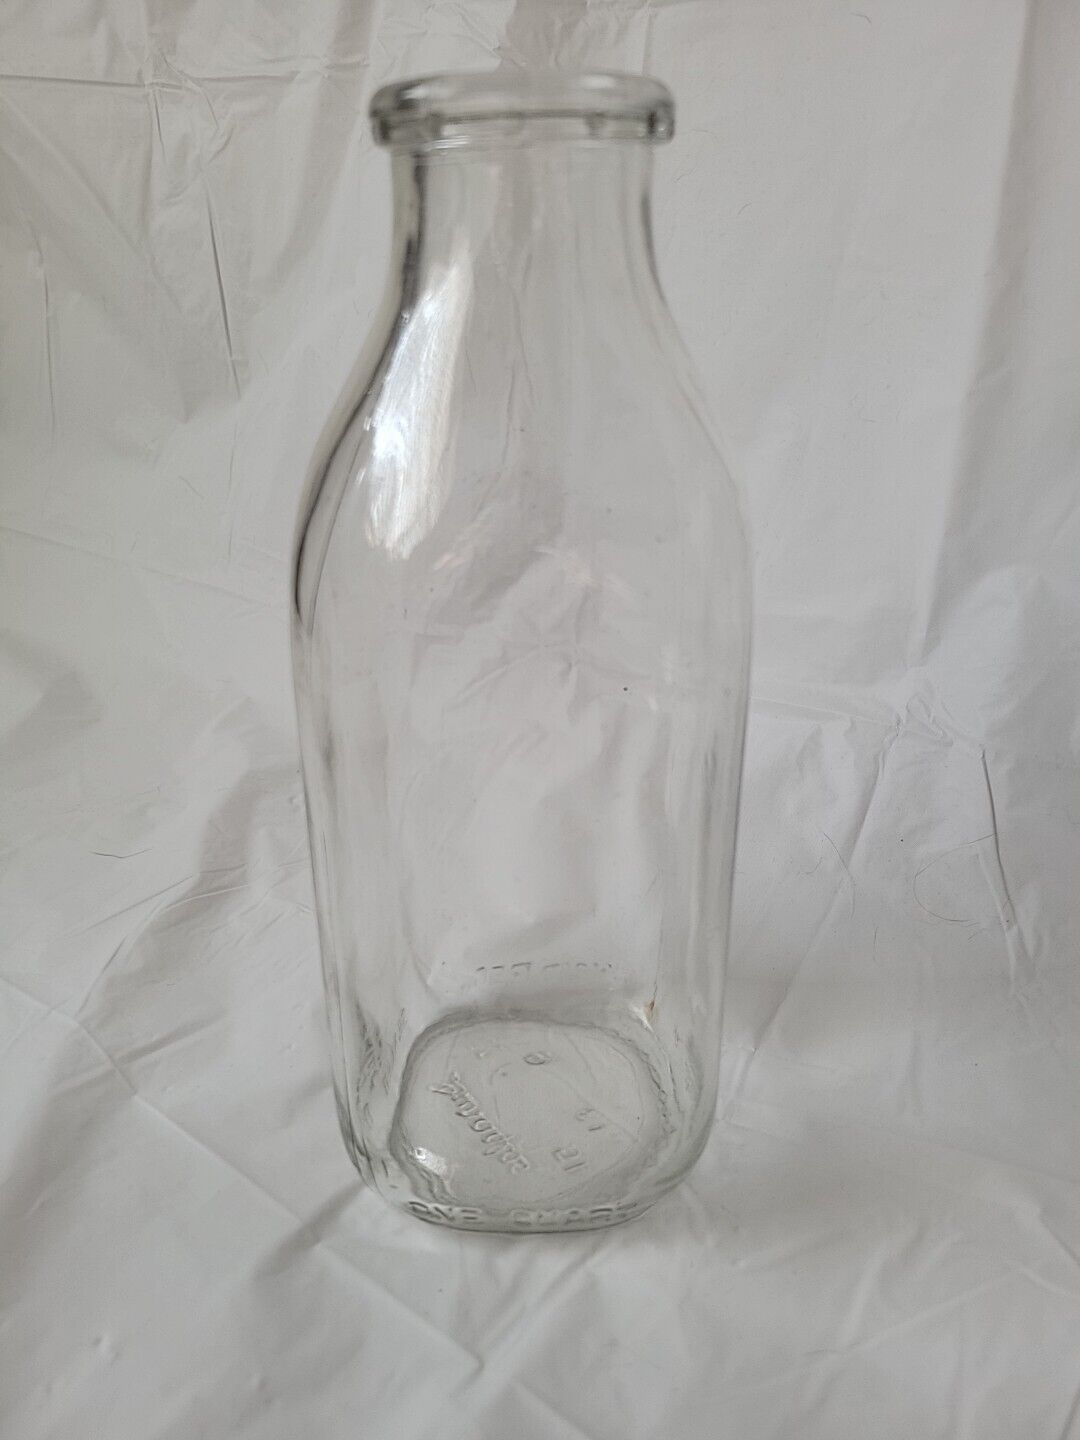 Vintage duraglas 1 qt. milk bottle clear glass